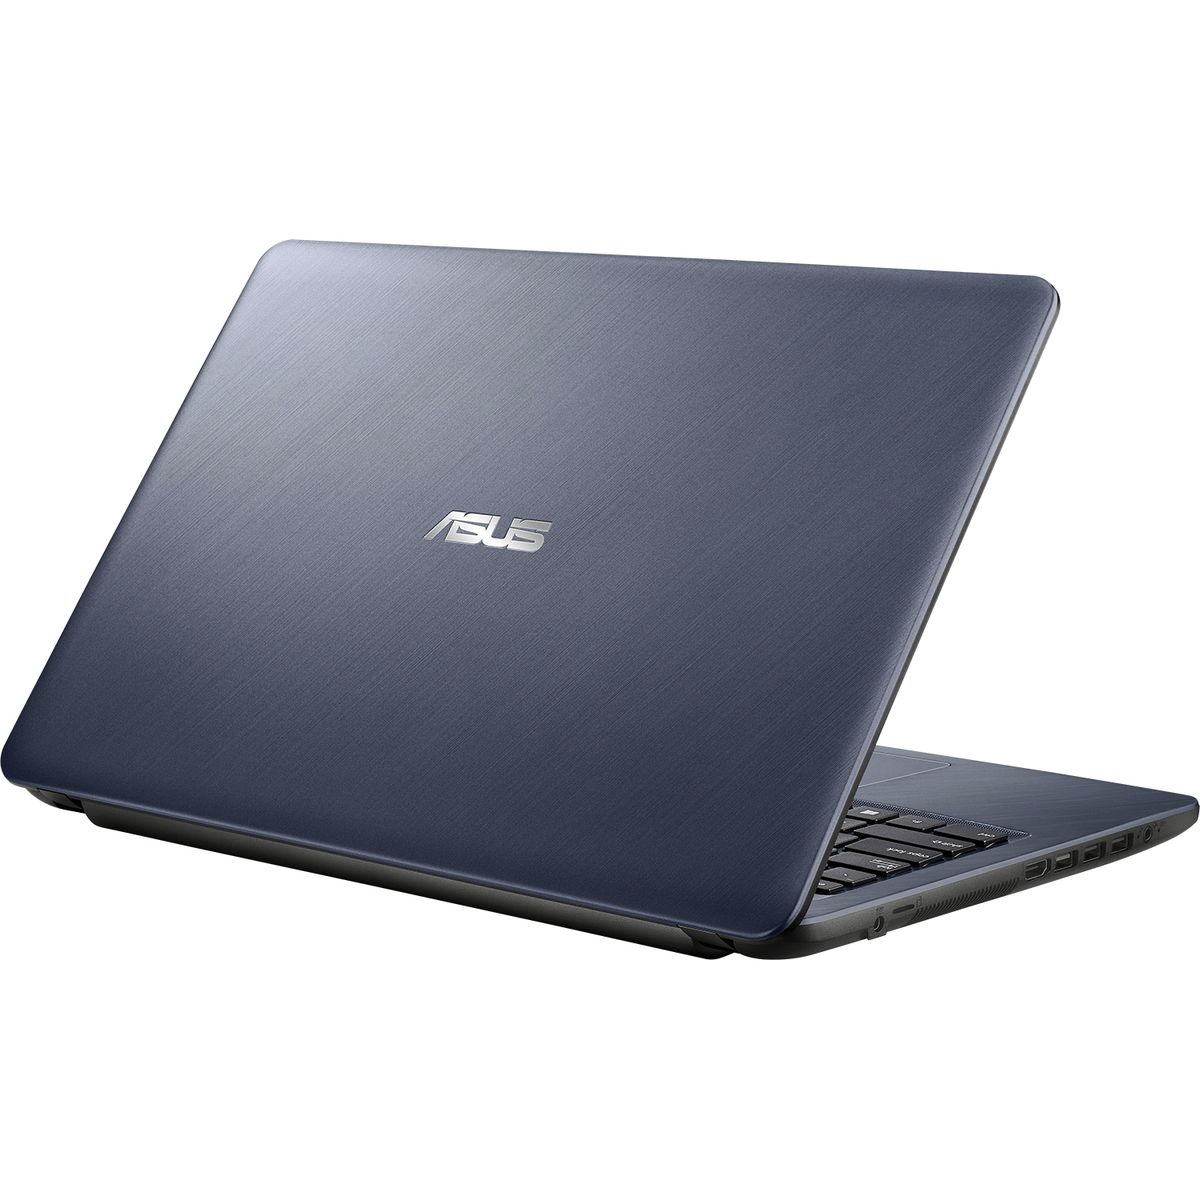 ASUS X541UA CQ927T Laptop - Core i3-6006U CPU, 4GB DDR4 RAM, 240GB SSD, 15.6" HD